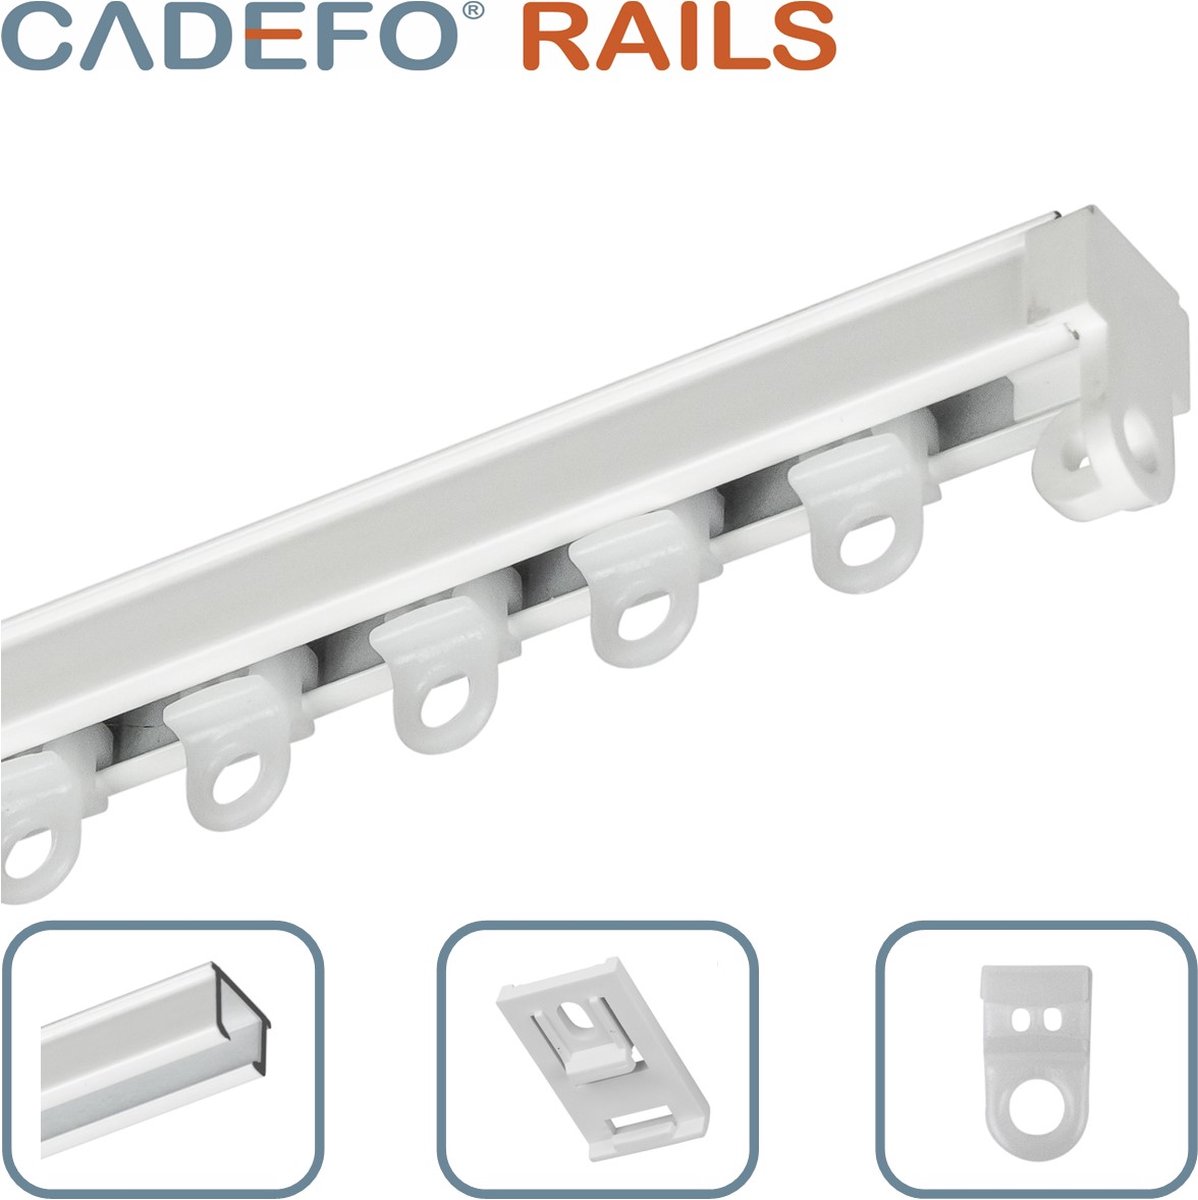 CADEFO RAILS (451 - 500 cm) Gordijnrails - Compleet op maat! - UIT 1 STUK - Leverbaar tot 6 meter - Plafondbevestiging - Lengte 461 cm